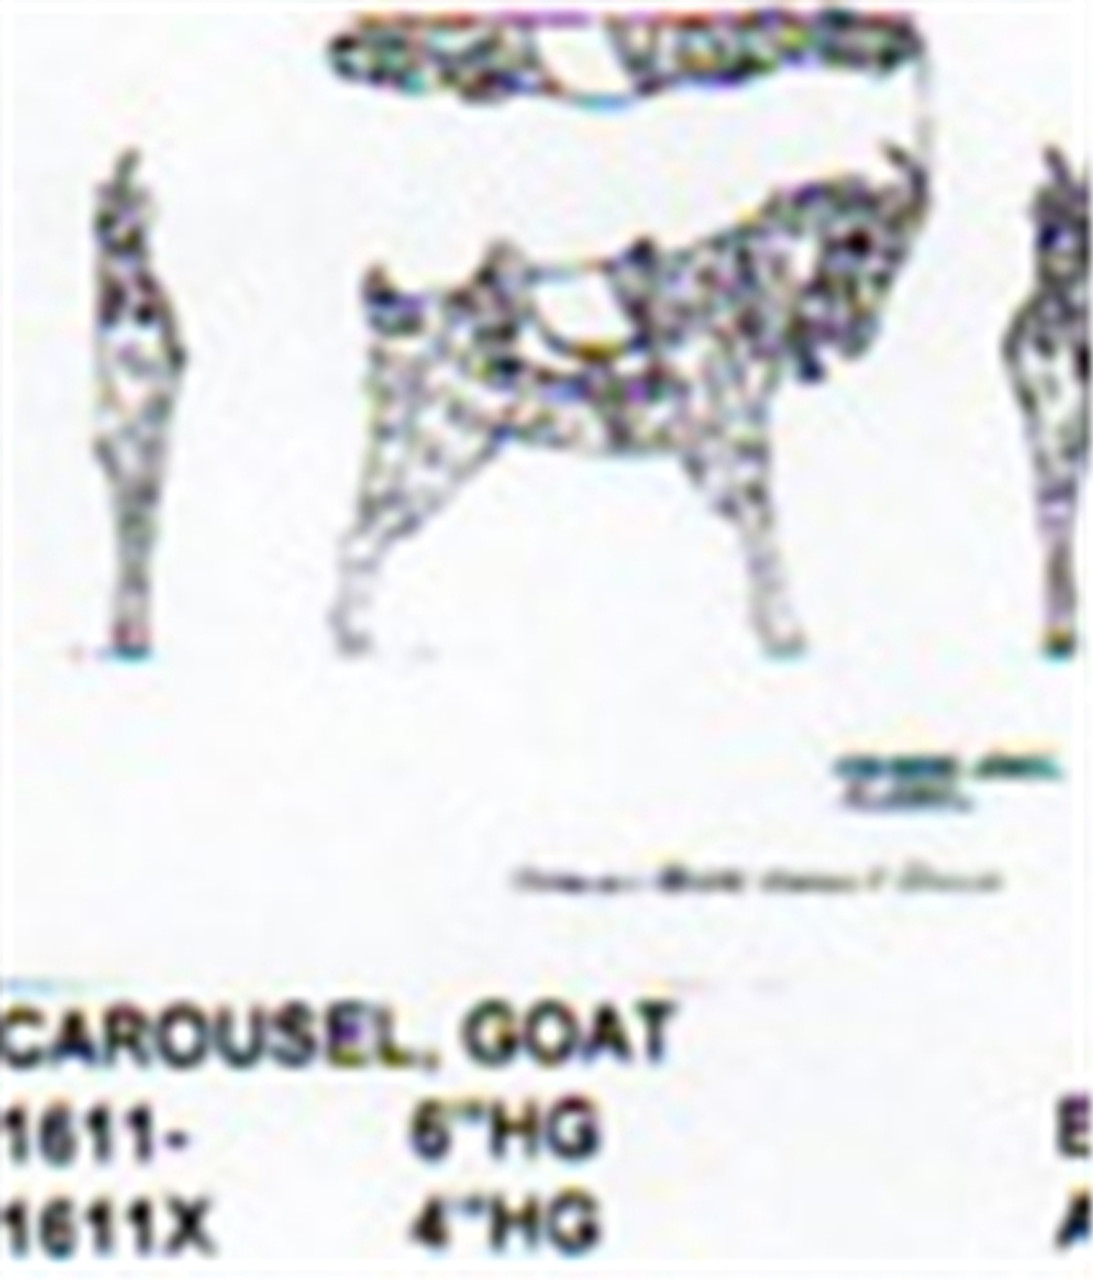 Carousel Goat 6"H